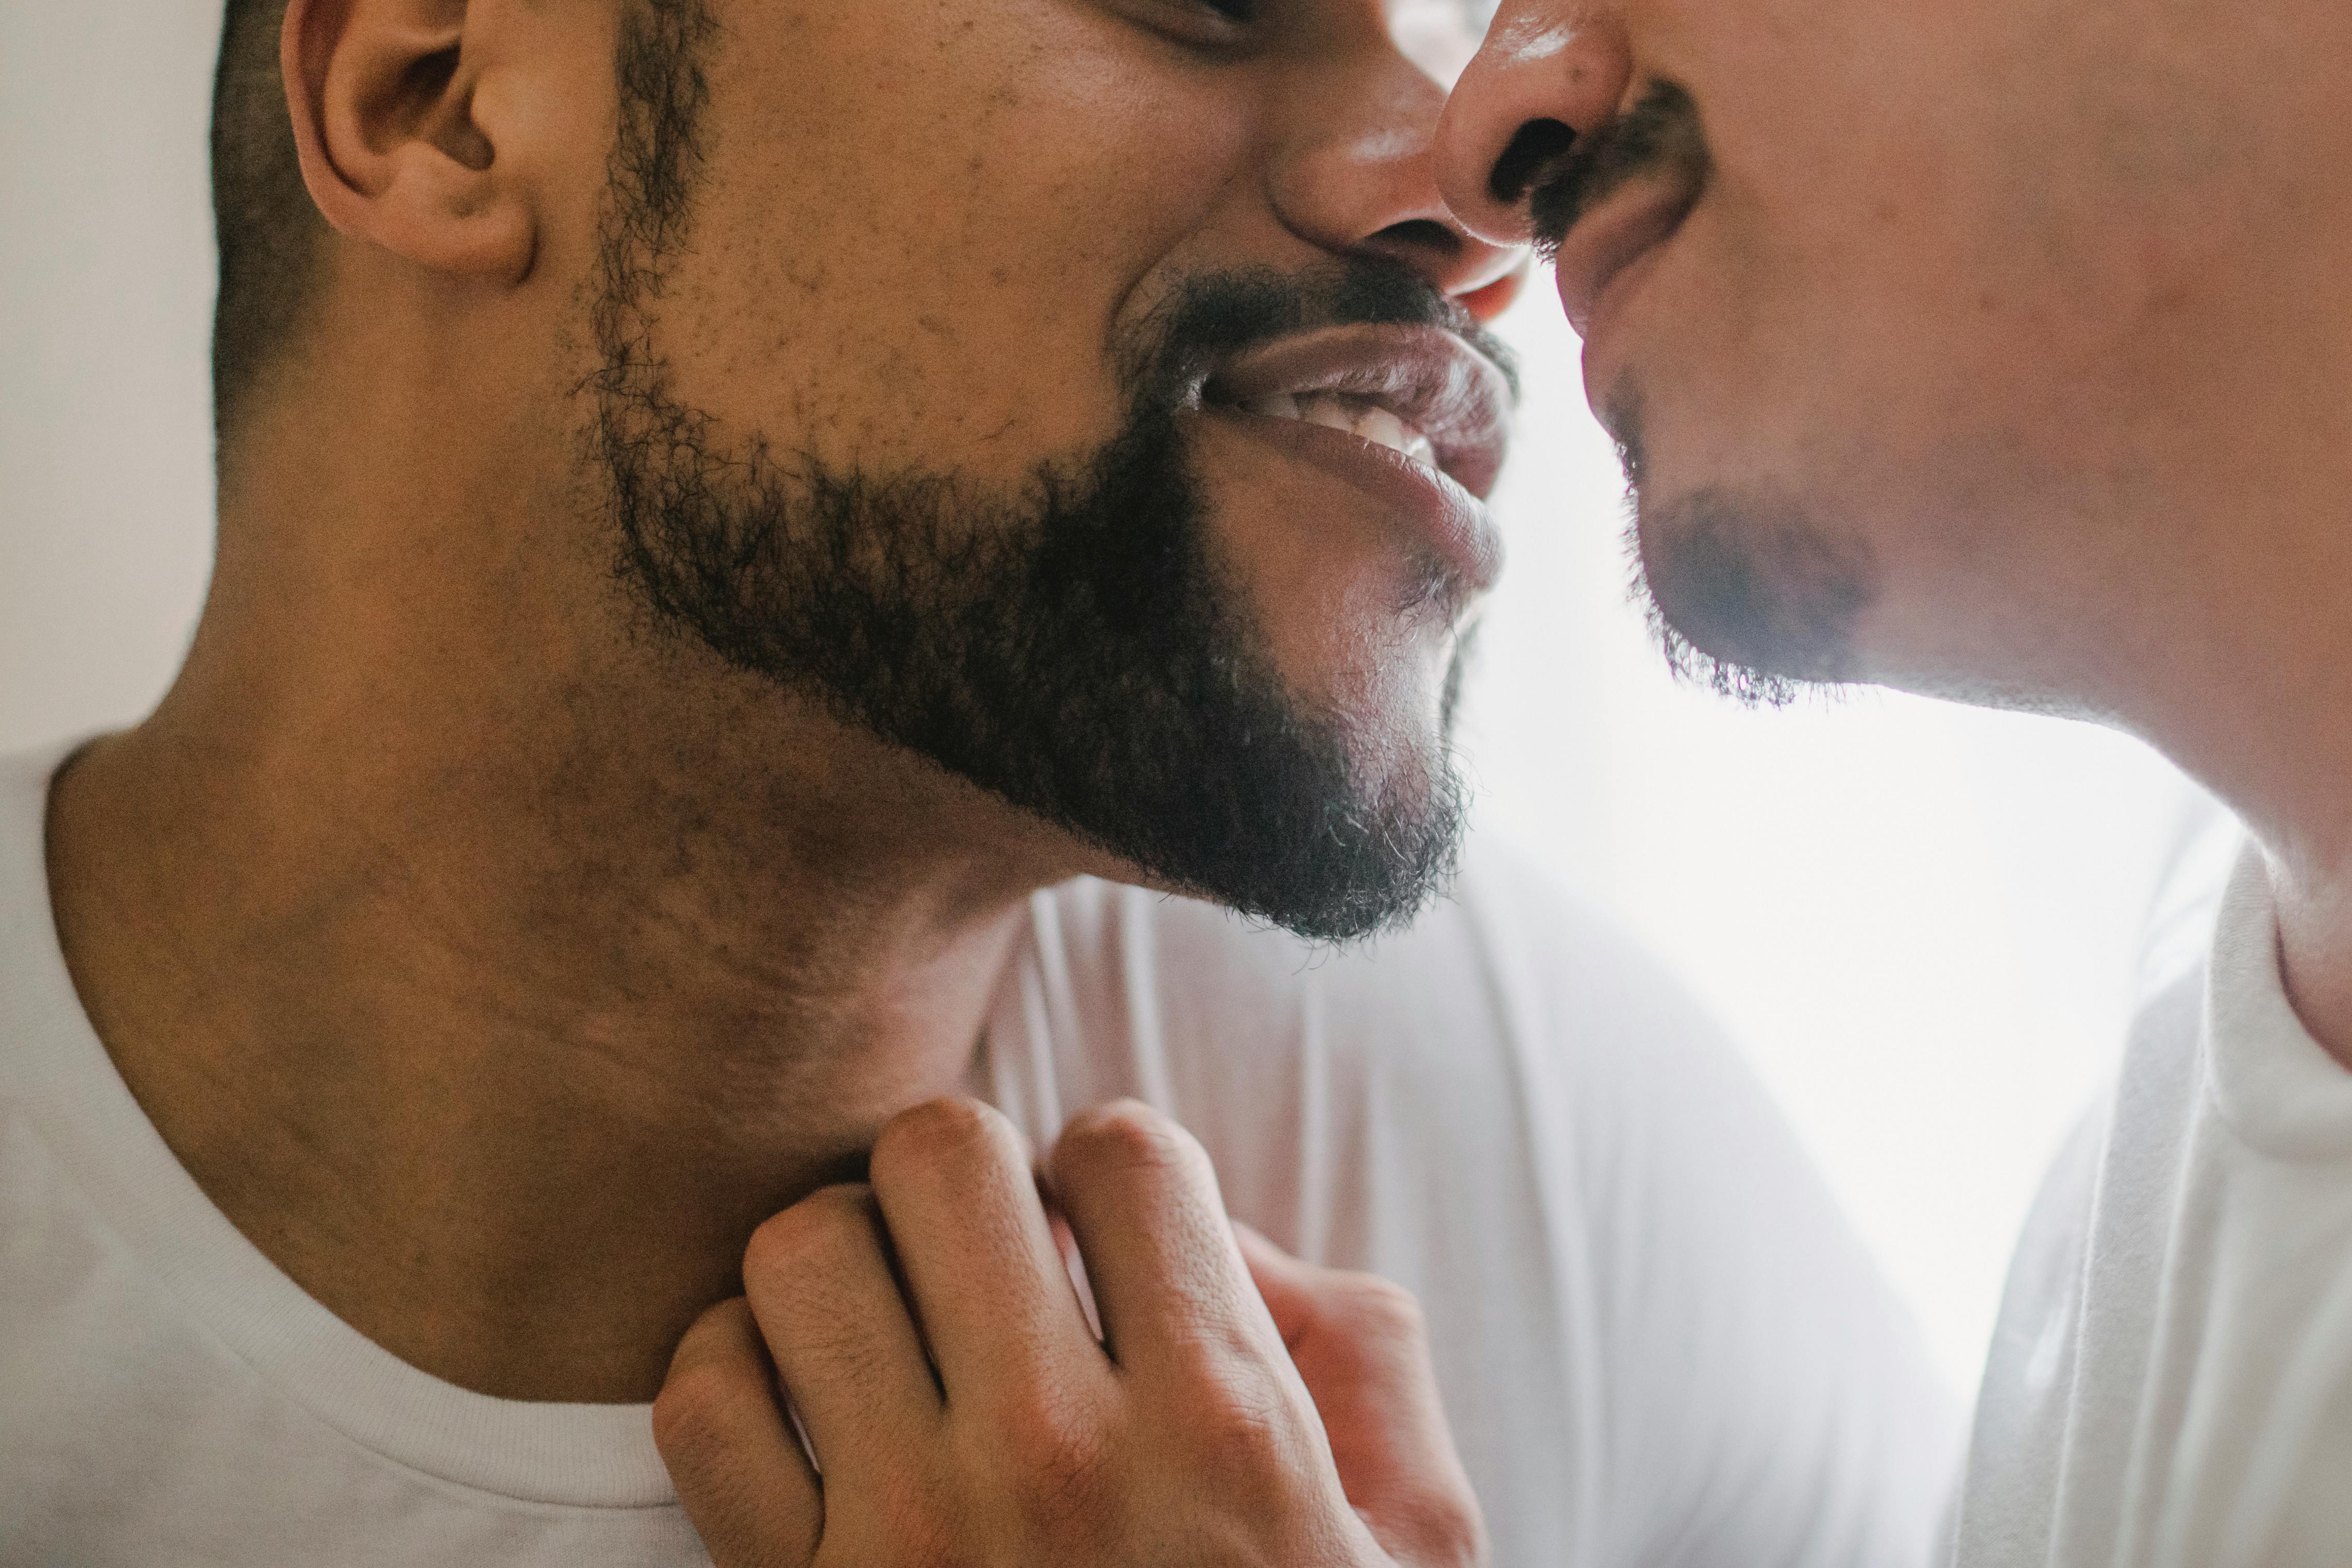 Zwei Männer, die sich gerade küssen | Quelle: Pexels